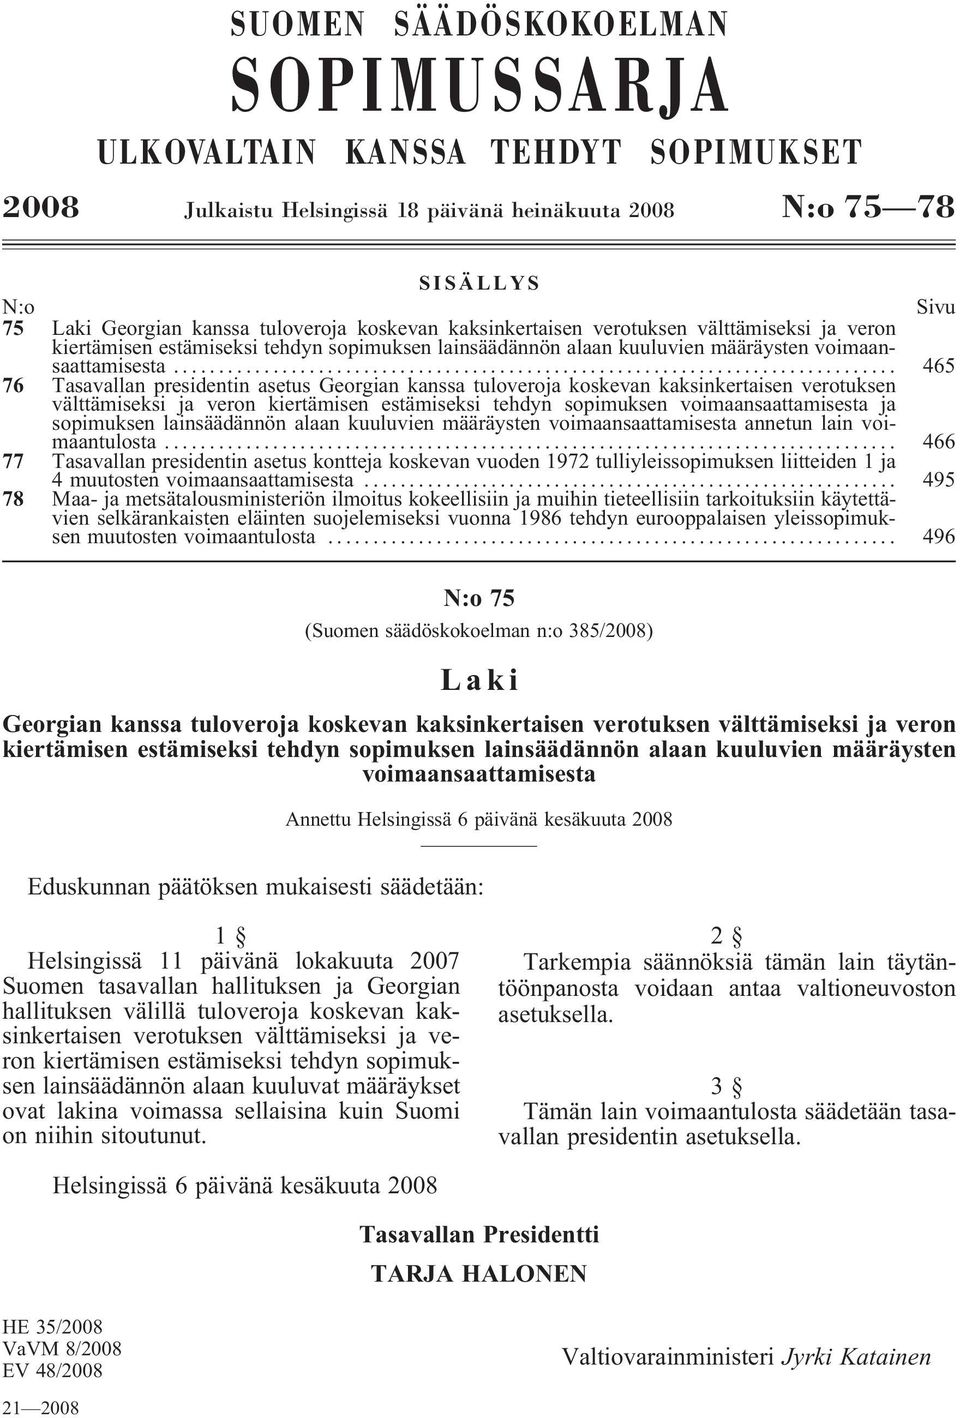 .. 465 76 Tasavallan presidentin asetus Georgian kanssa tuloveroja koskevan kaksinkertaisen verotuksen välttämiseksi ja veron kiertämisen estämiseksi tehdyn sopimuksen voimaansaattamisesta ja